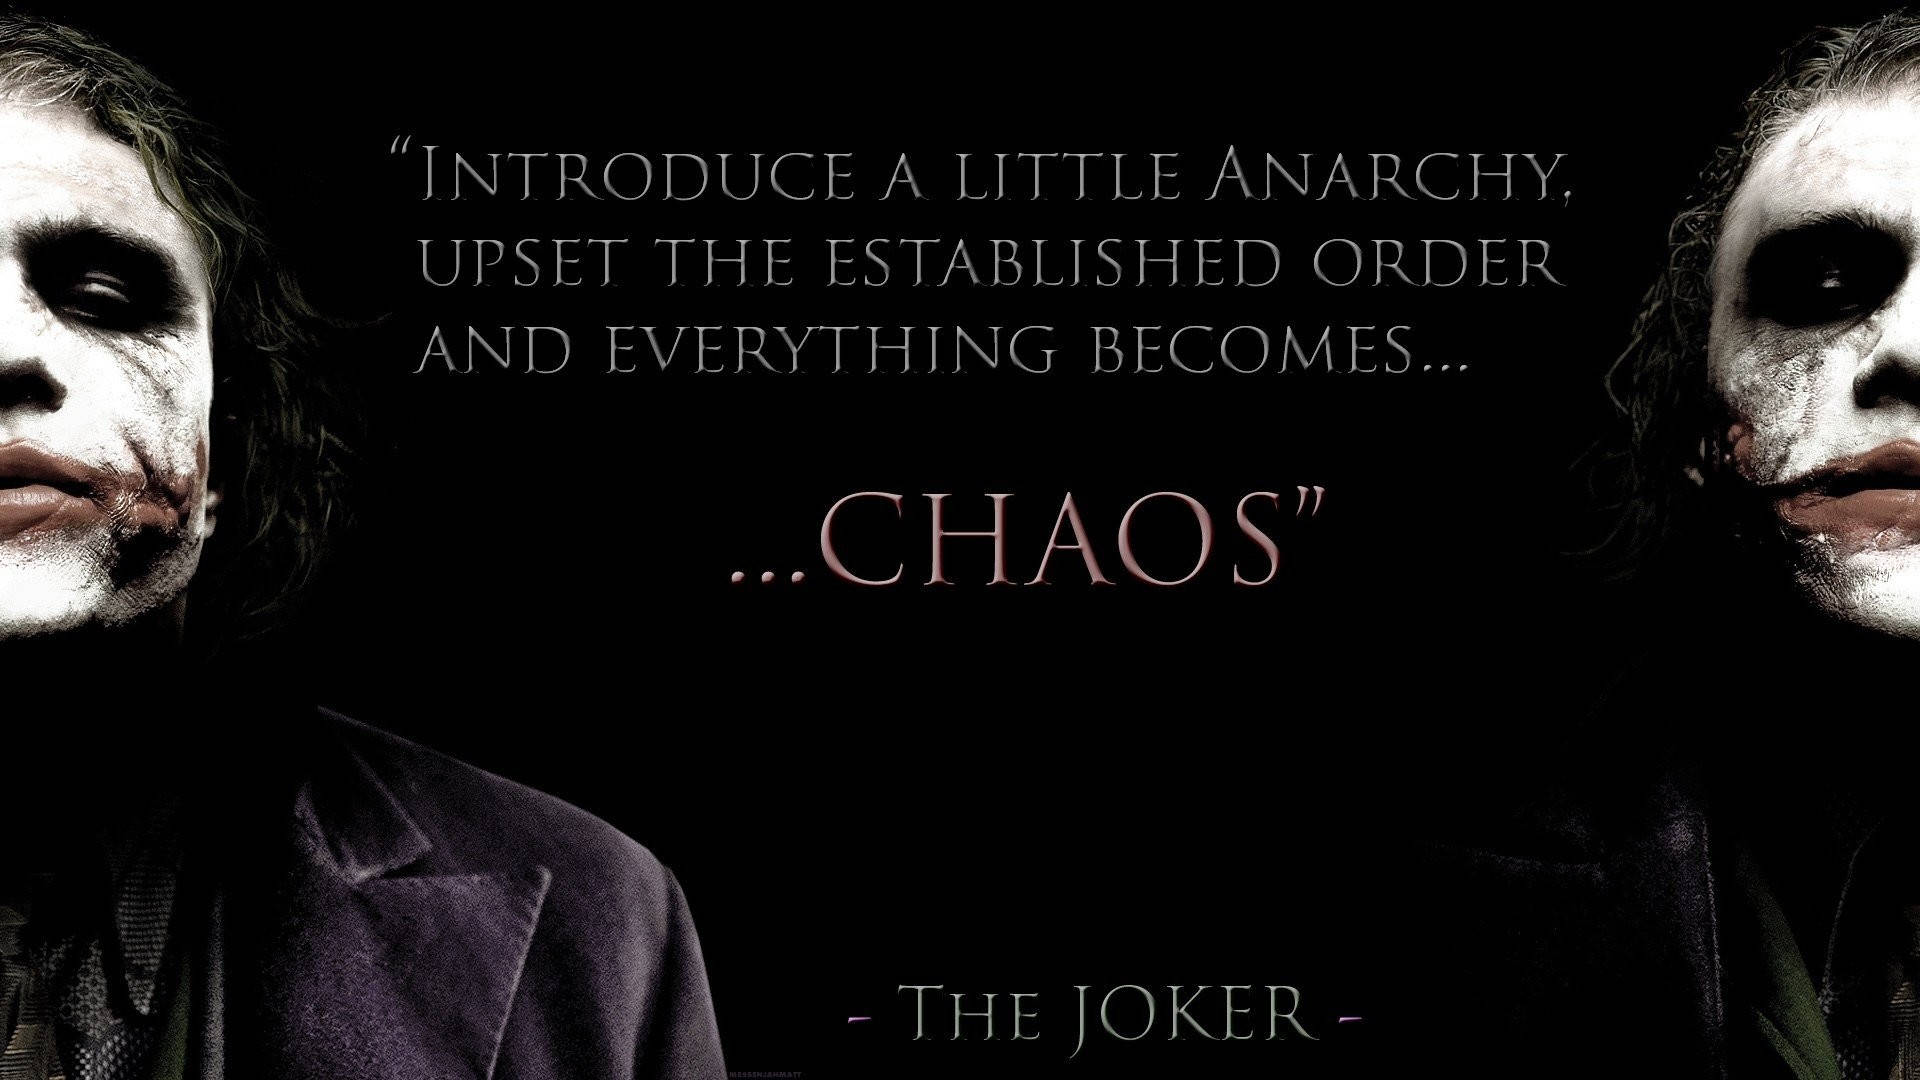 Download Joker's Quotes From Batman Wallpaper 